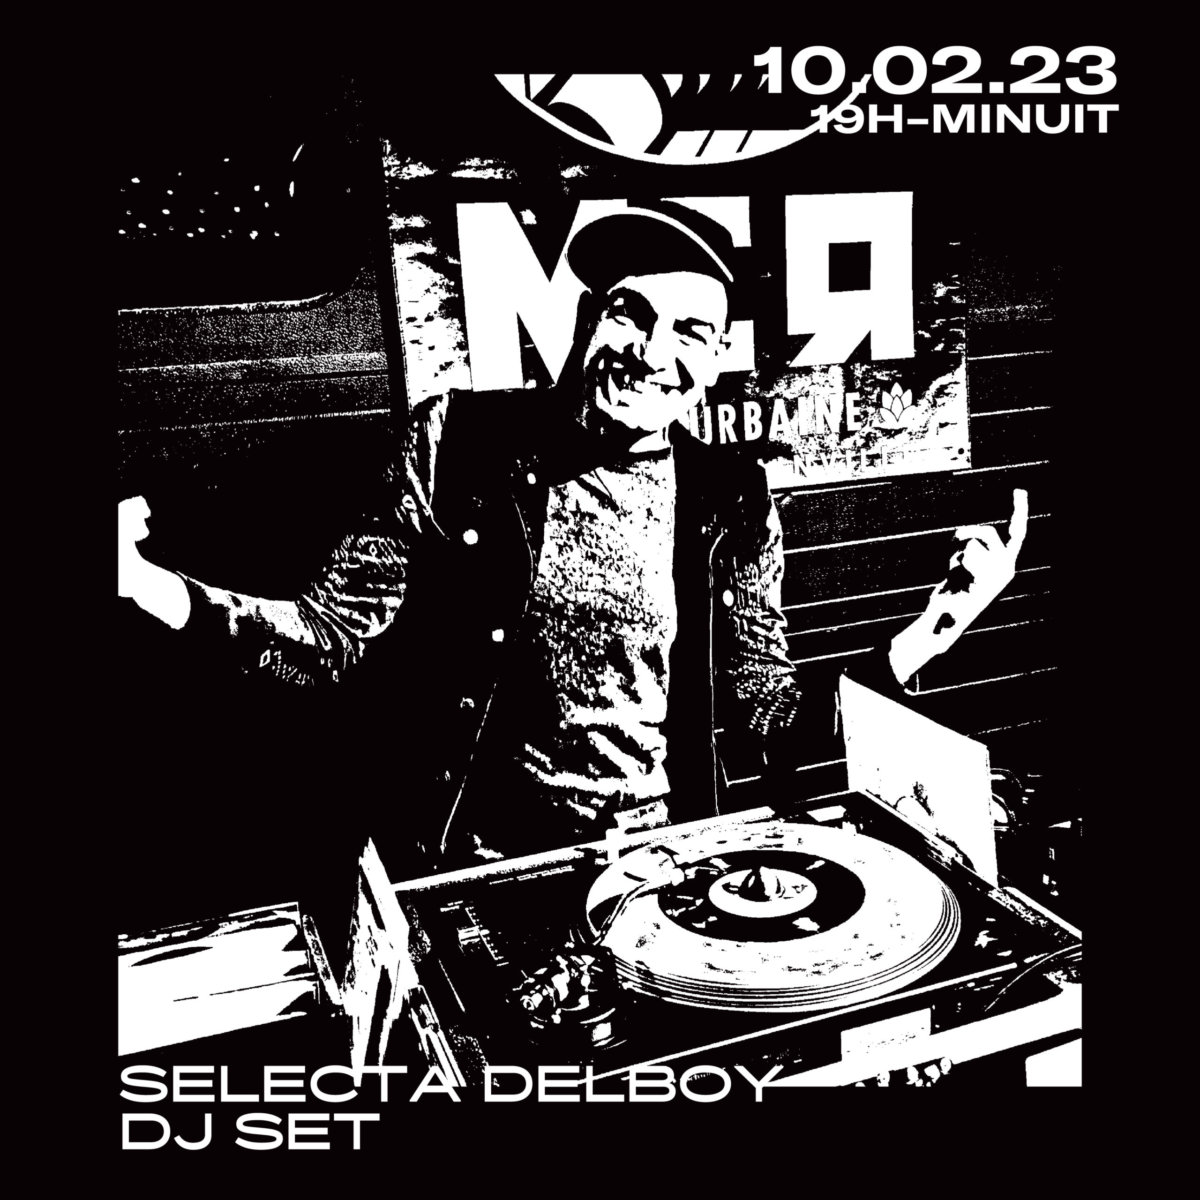 SELECTA DELBOY DJ SET